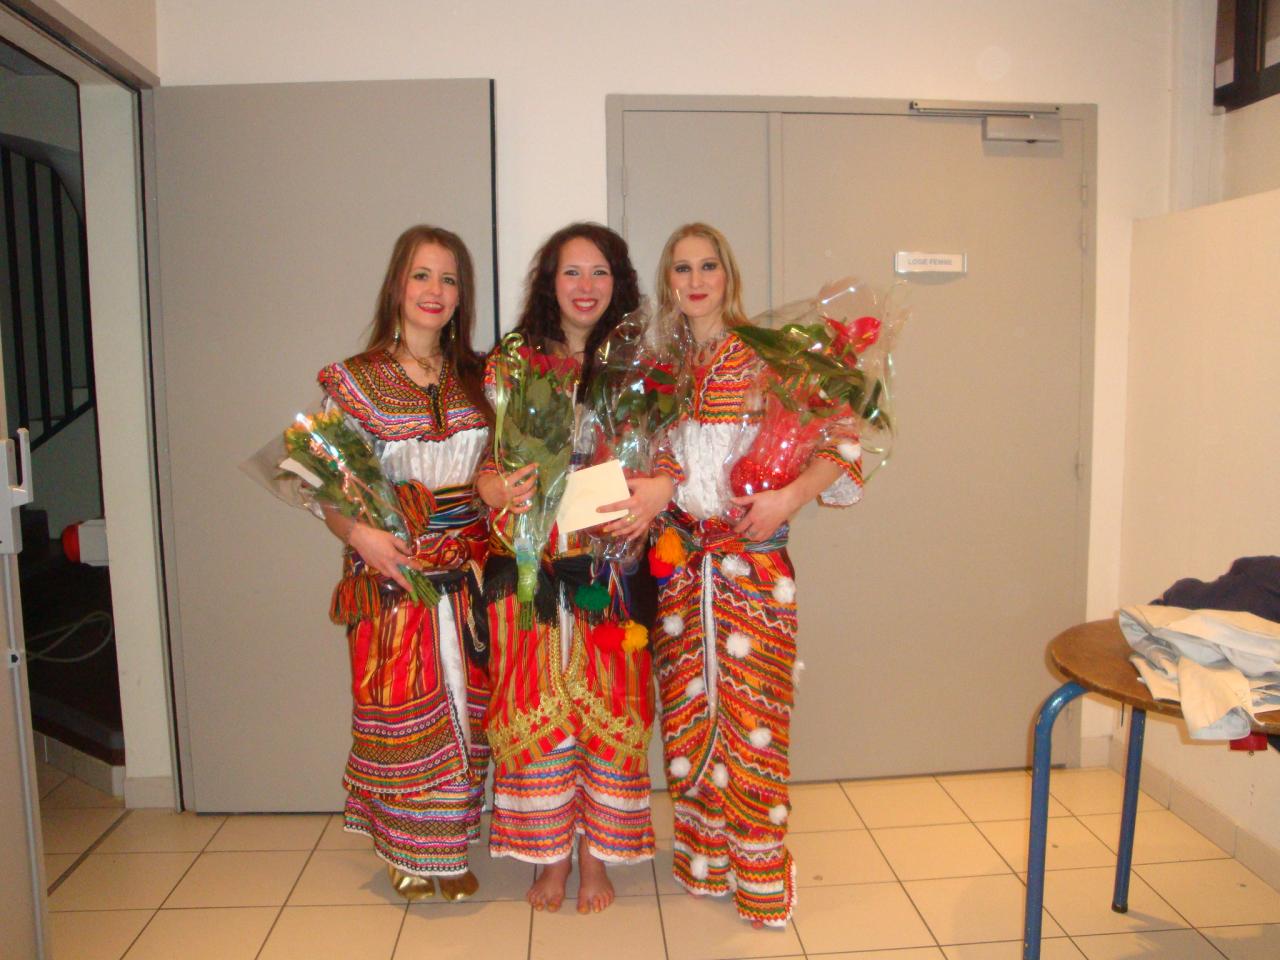 Troupe Danse Kabyle